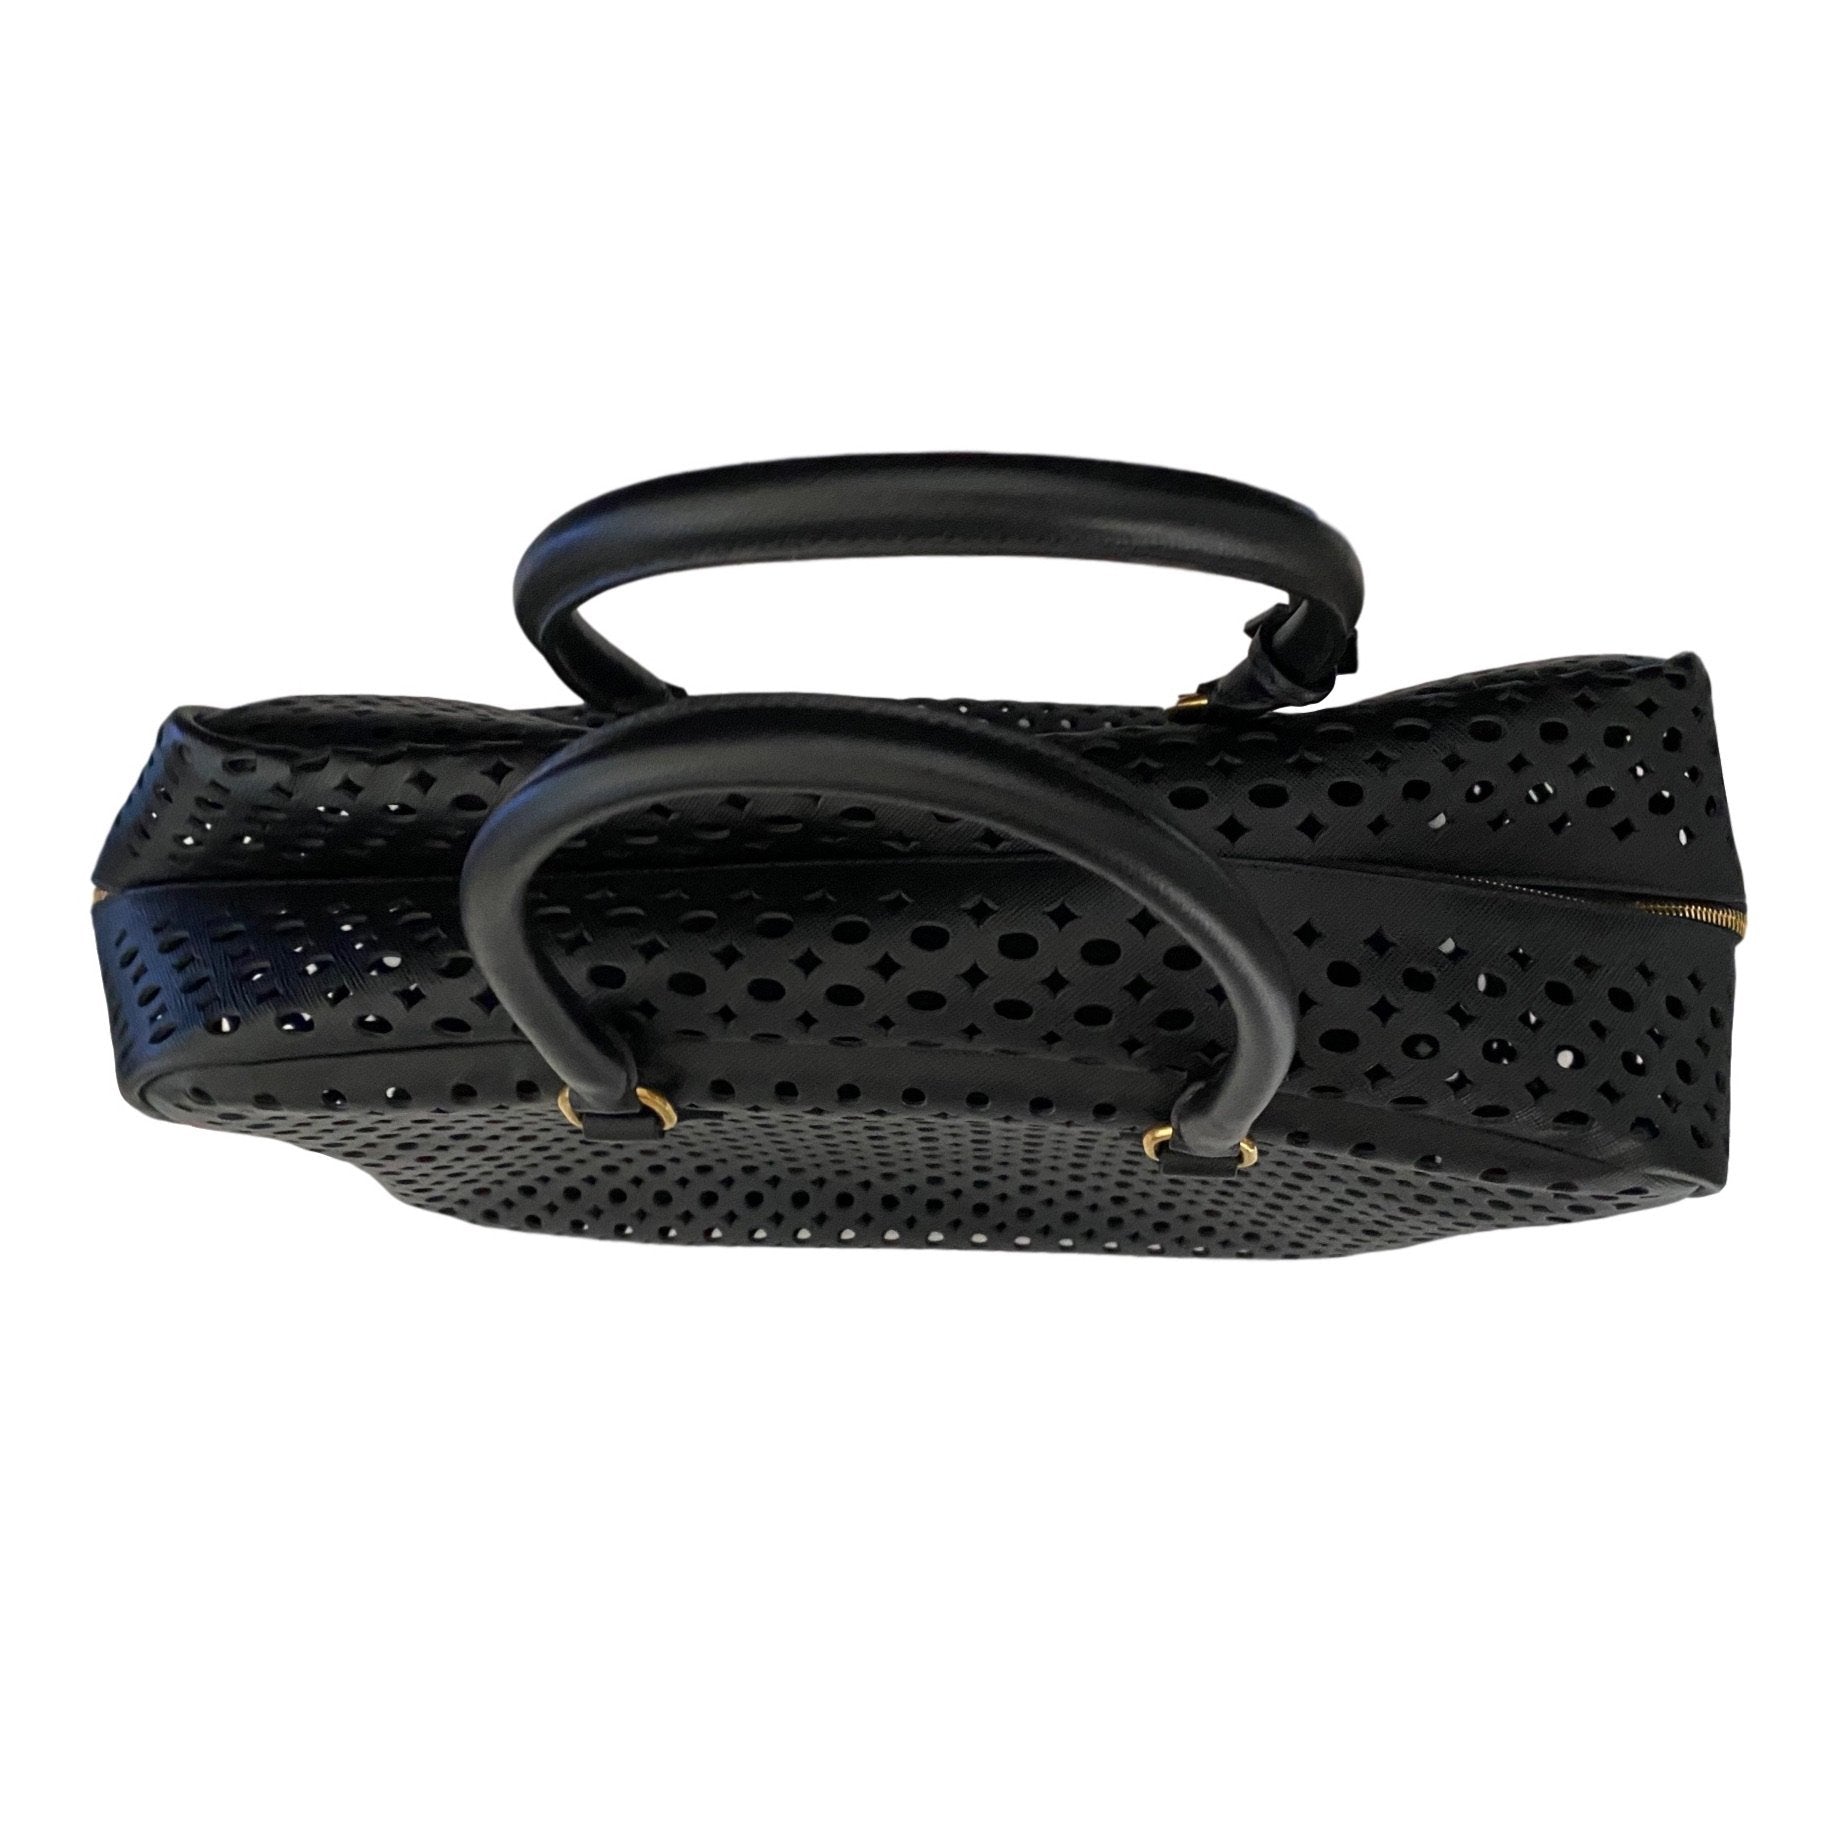 Prada Black Perforated Top Handle Bag